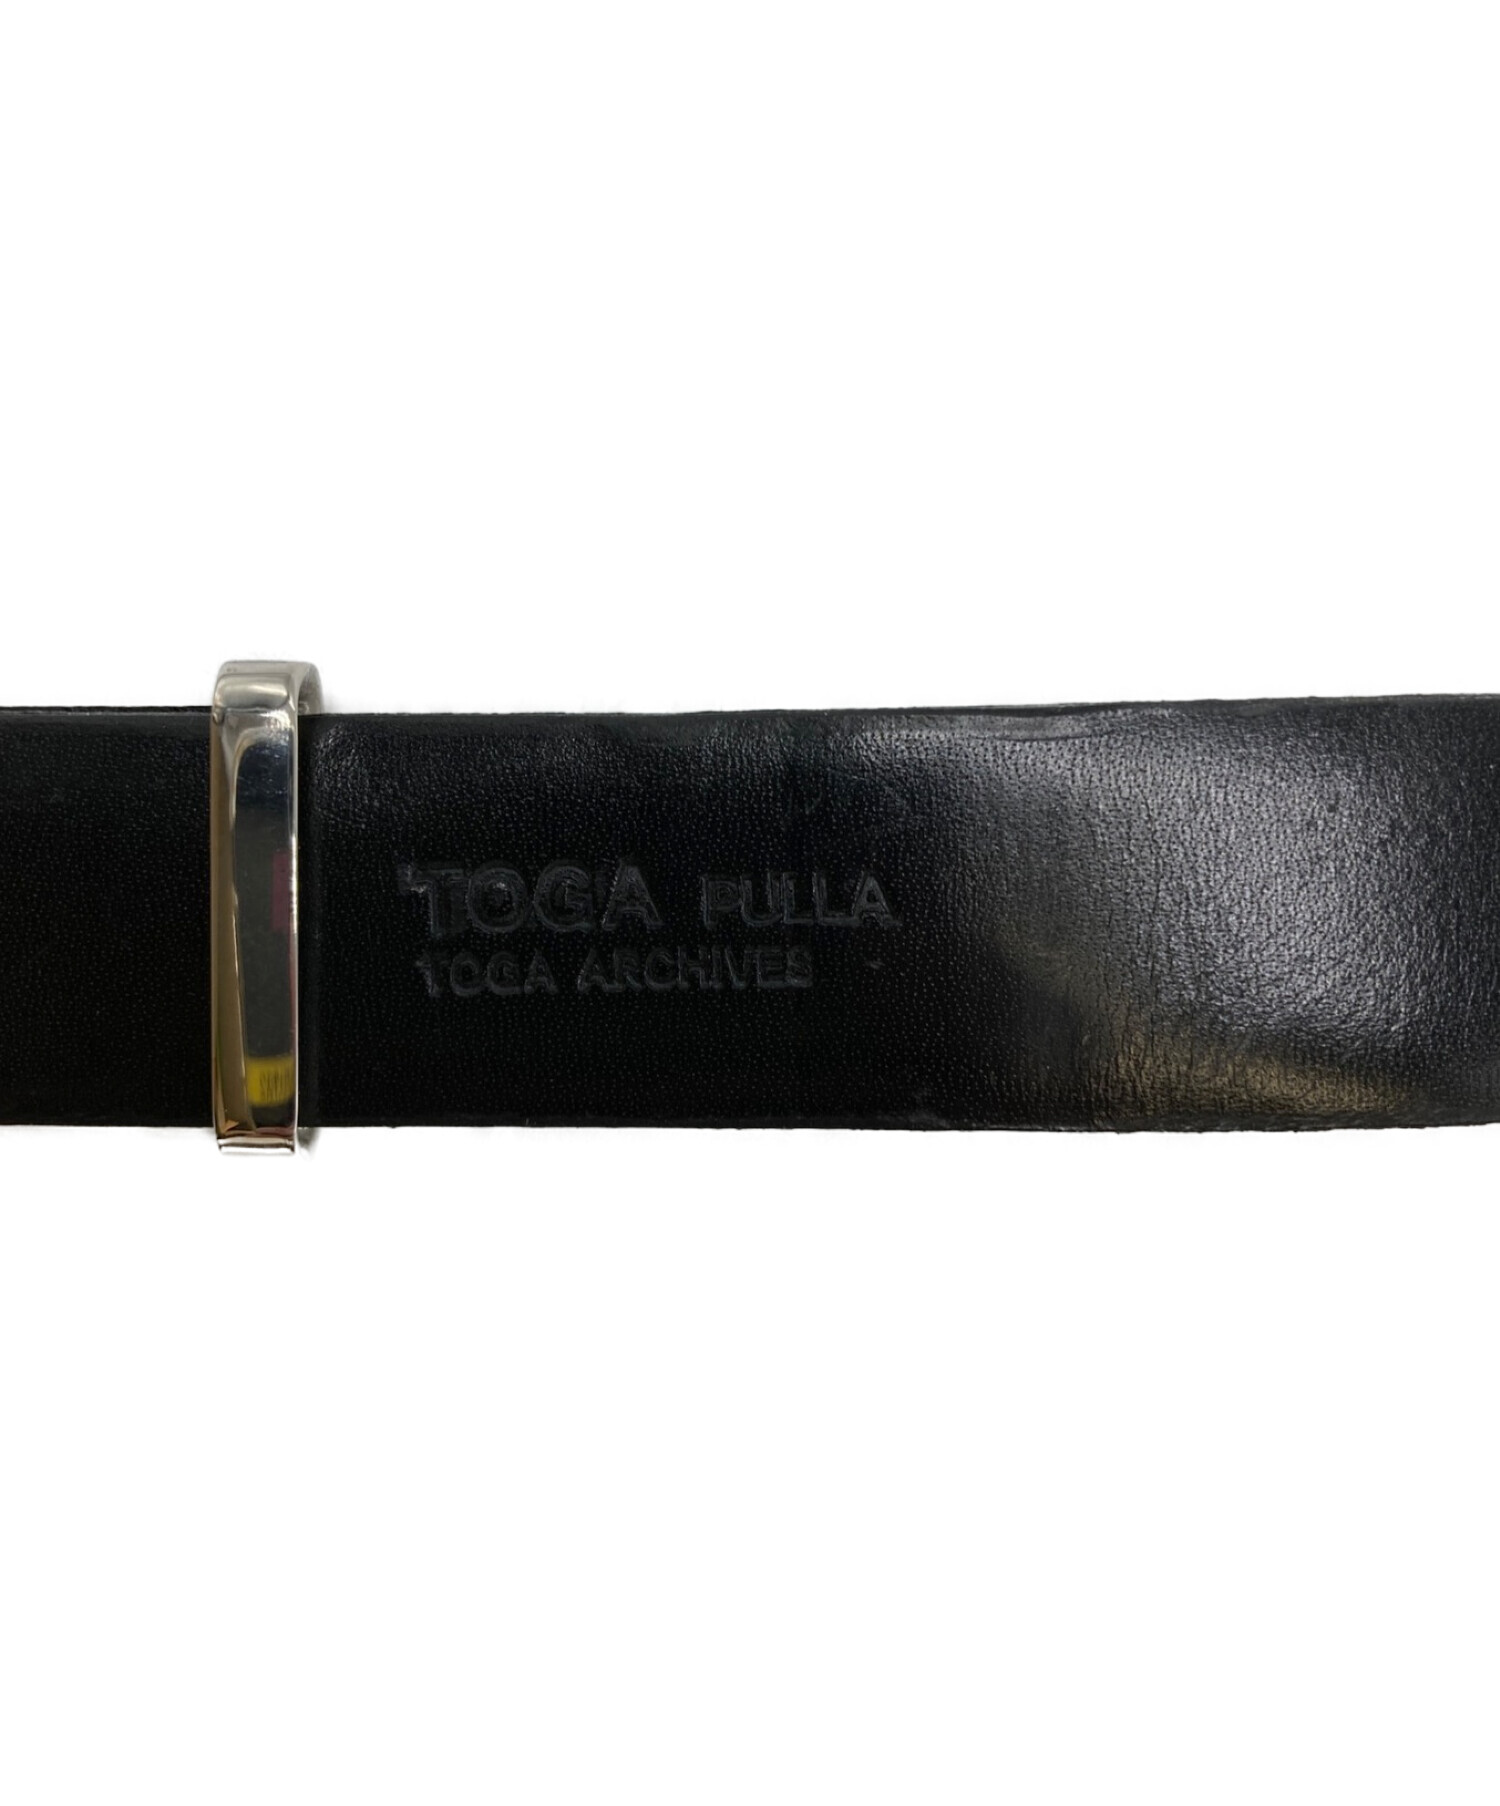 TOGA PULLA (トーガ プルラ) ウエスタンベルト ブラック